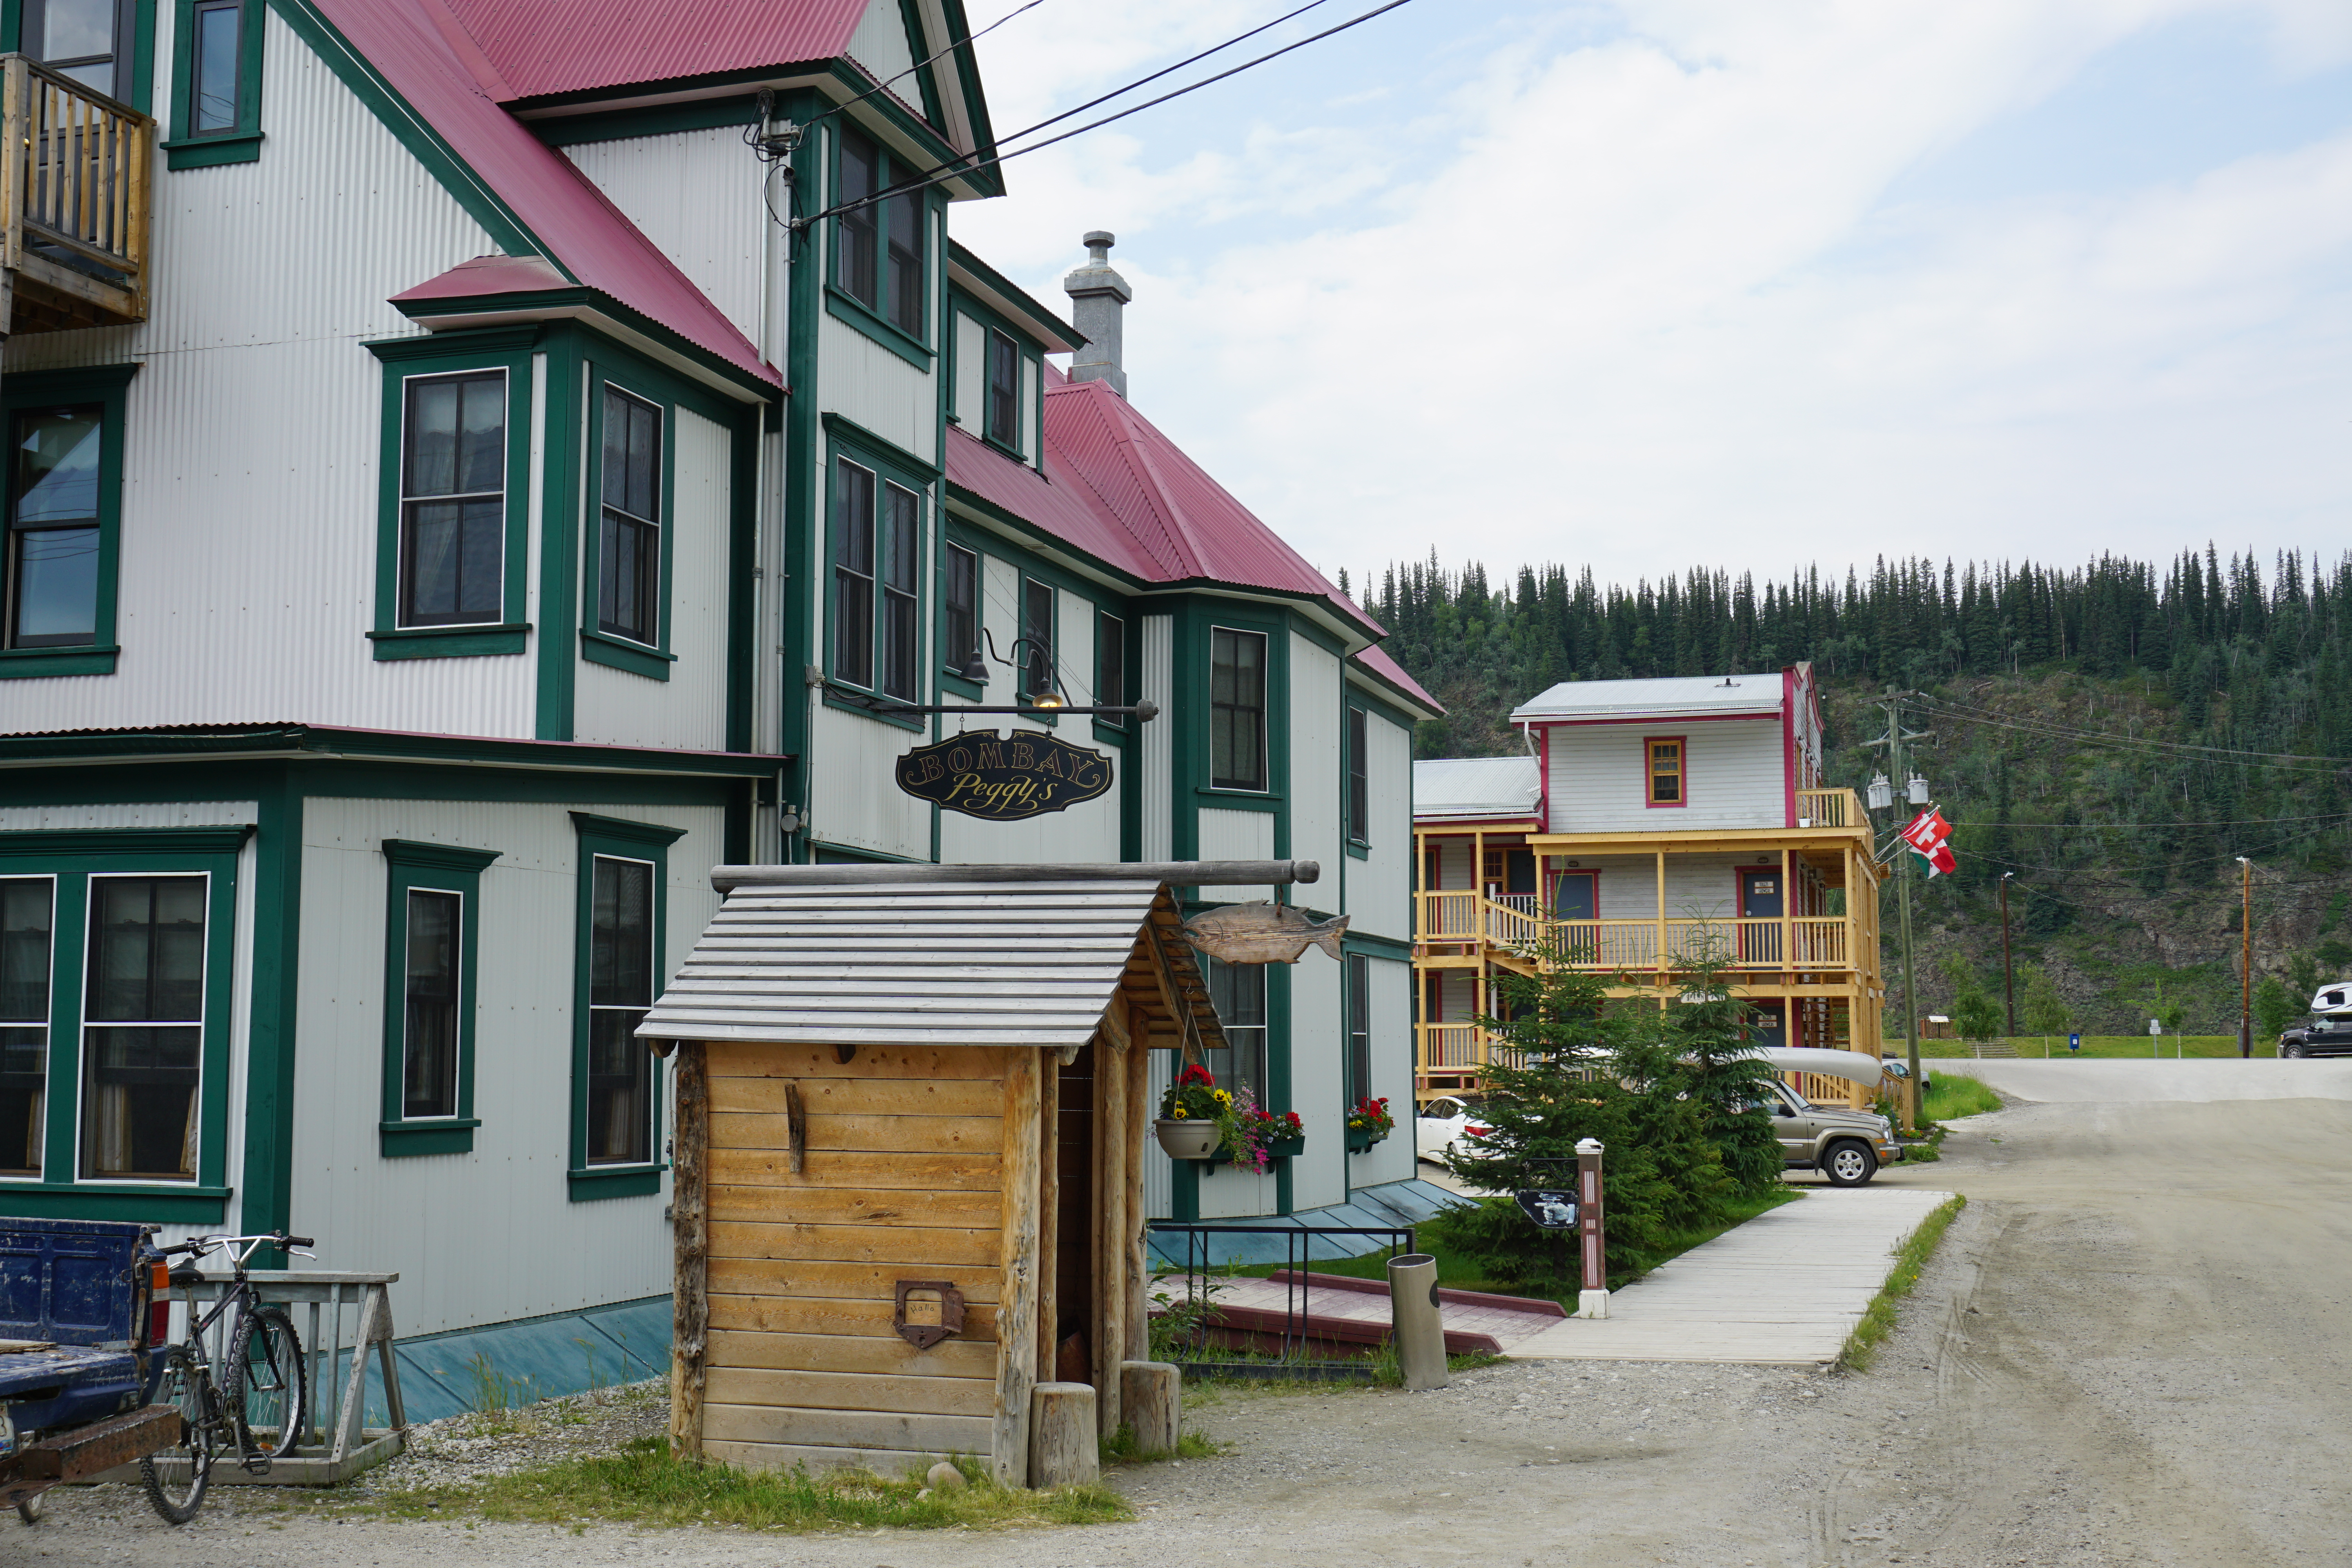 Pub and our hotel - Dawson City